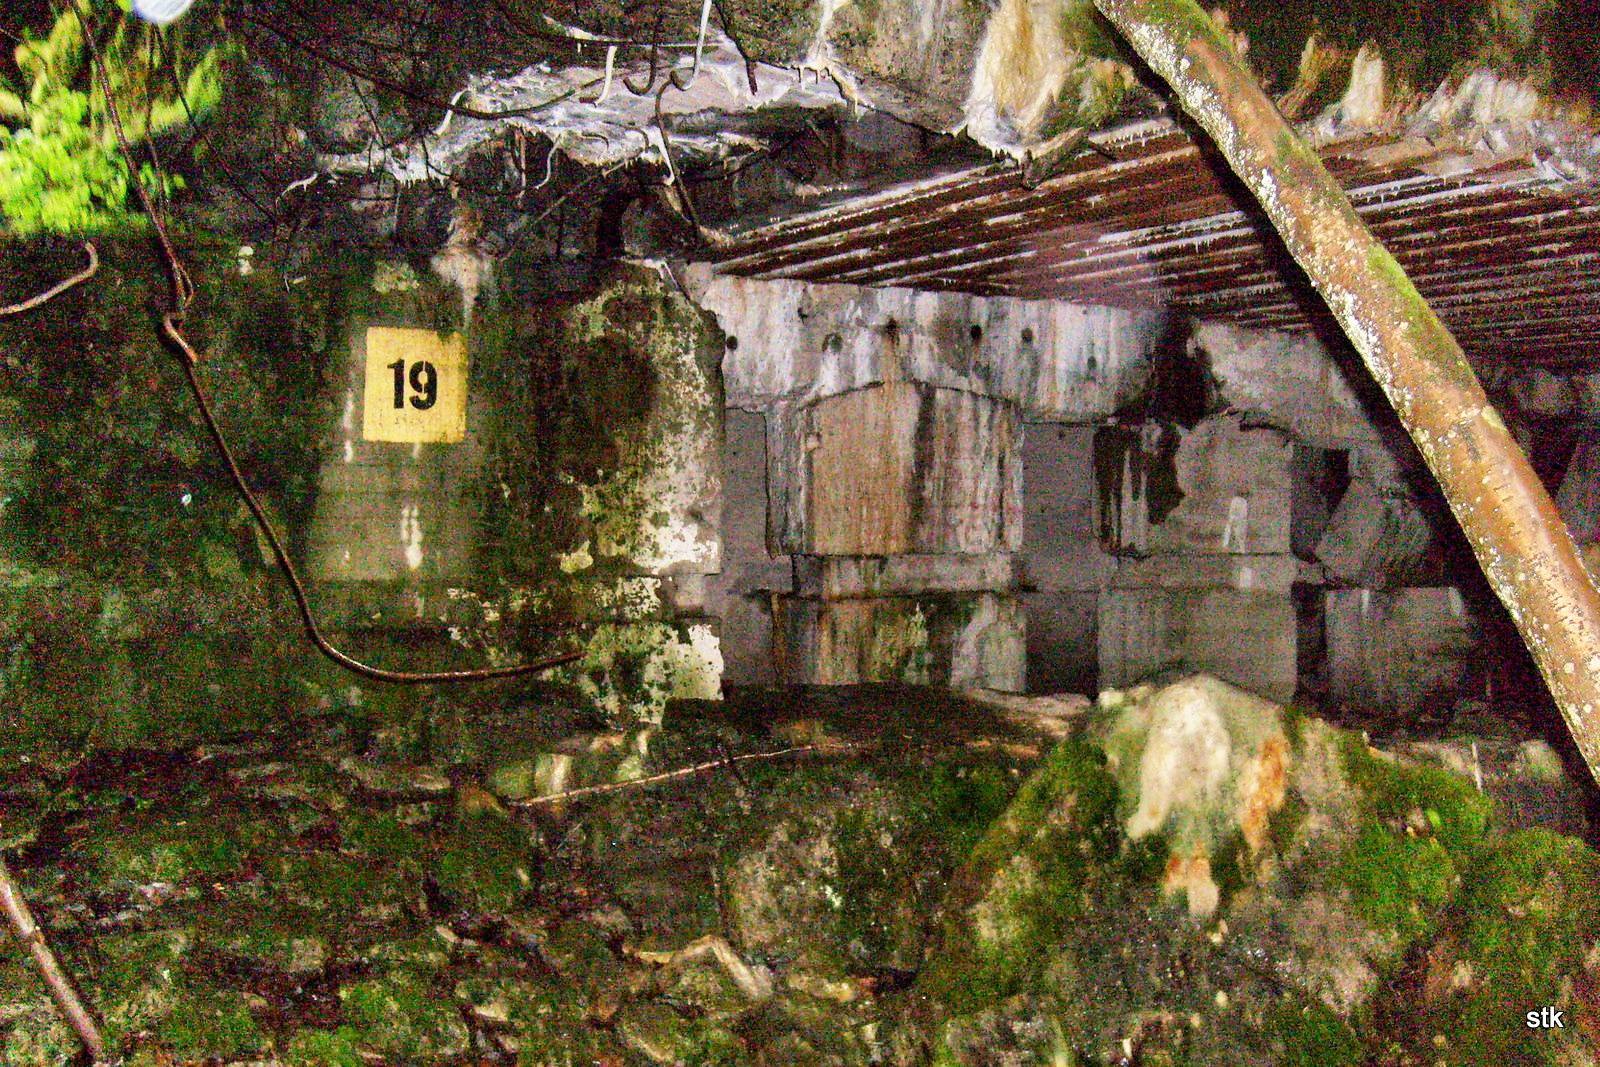 Inside a ruin